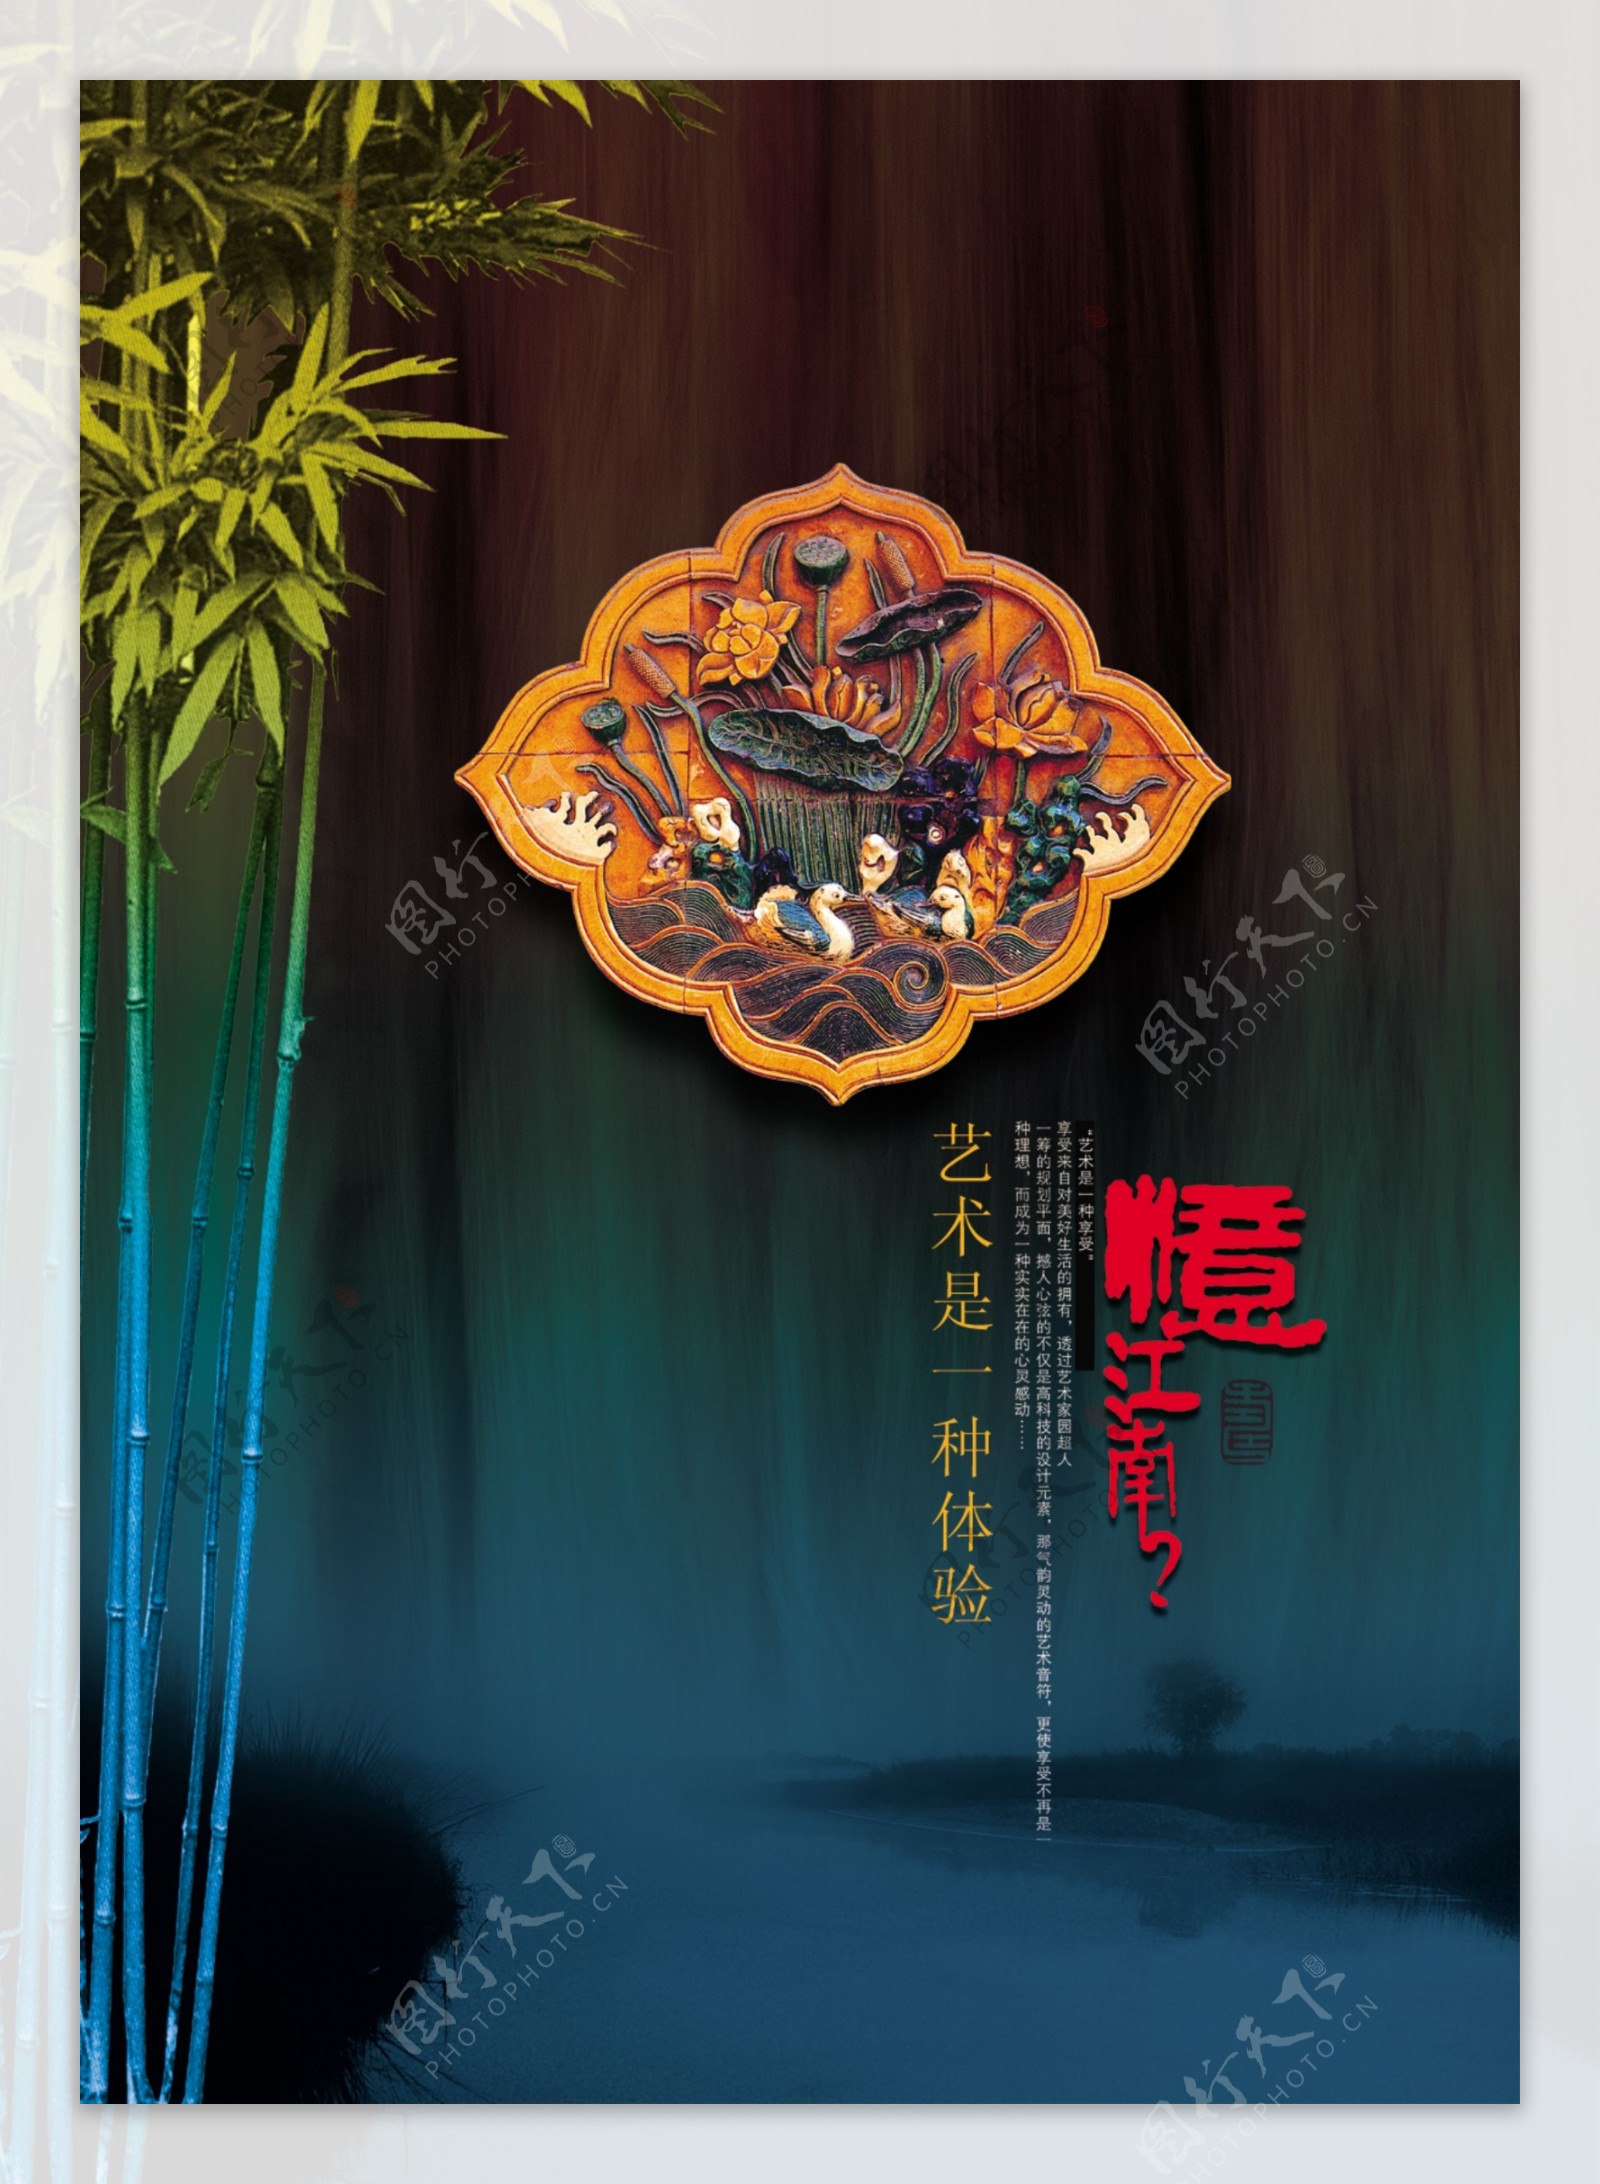 中国风毛竹意境艺术海报